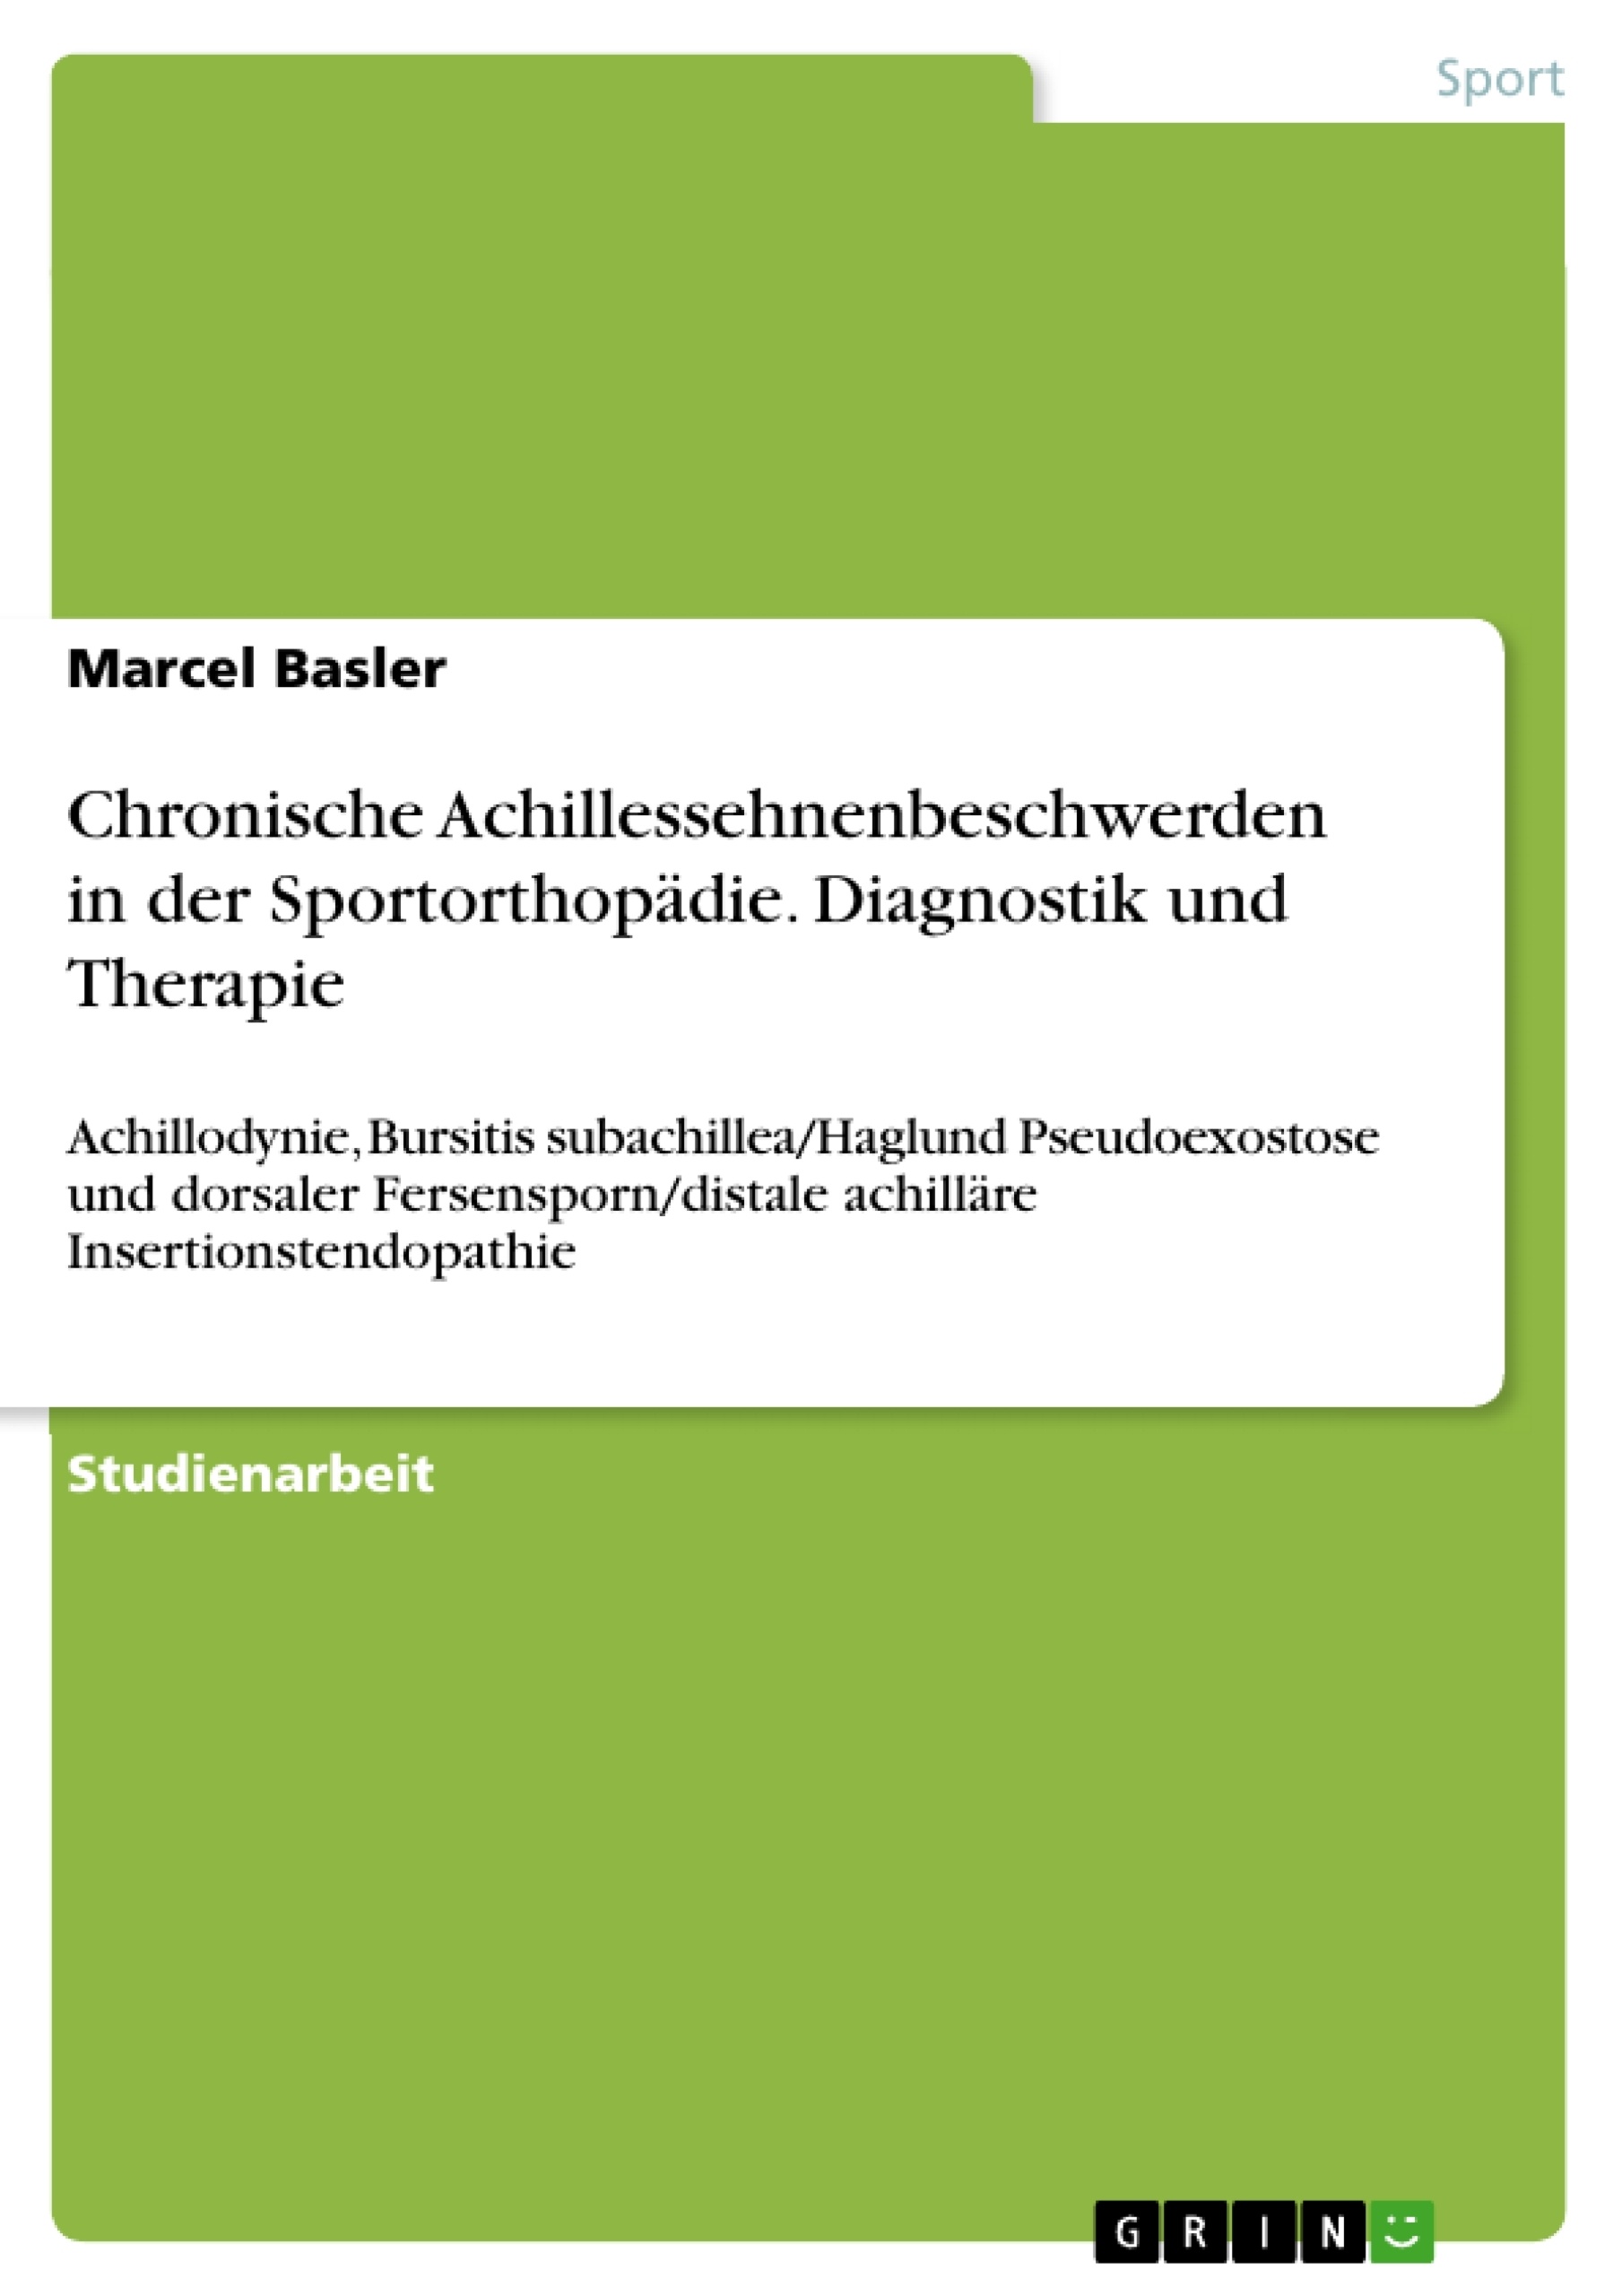 Título: Chronische Achillessehnenbeschwerden in der Sportorthopädie. Diagnostik und Therapie